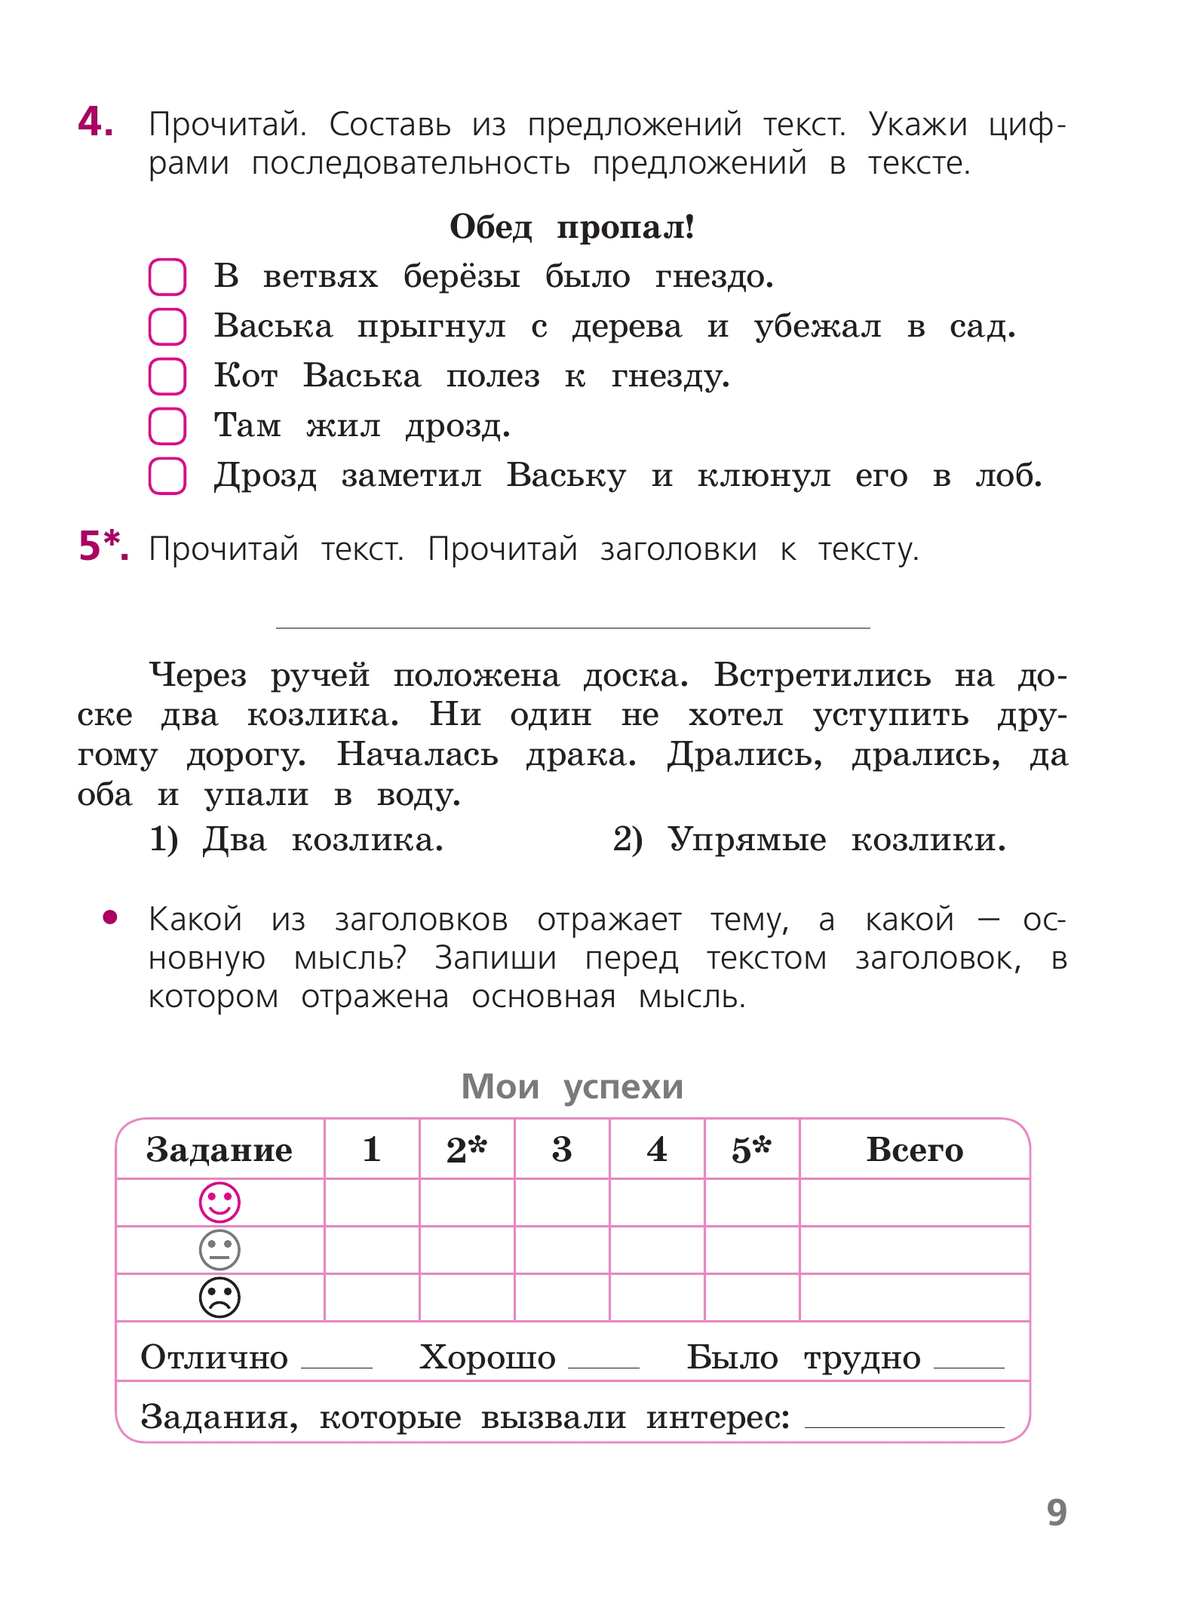 Русский язык. Тетрадь учебных достижений. 2 класс 5